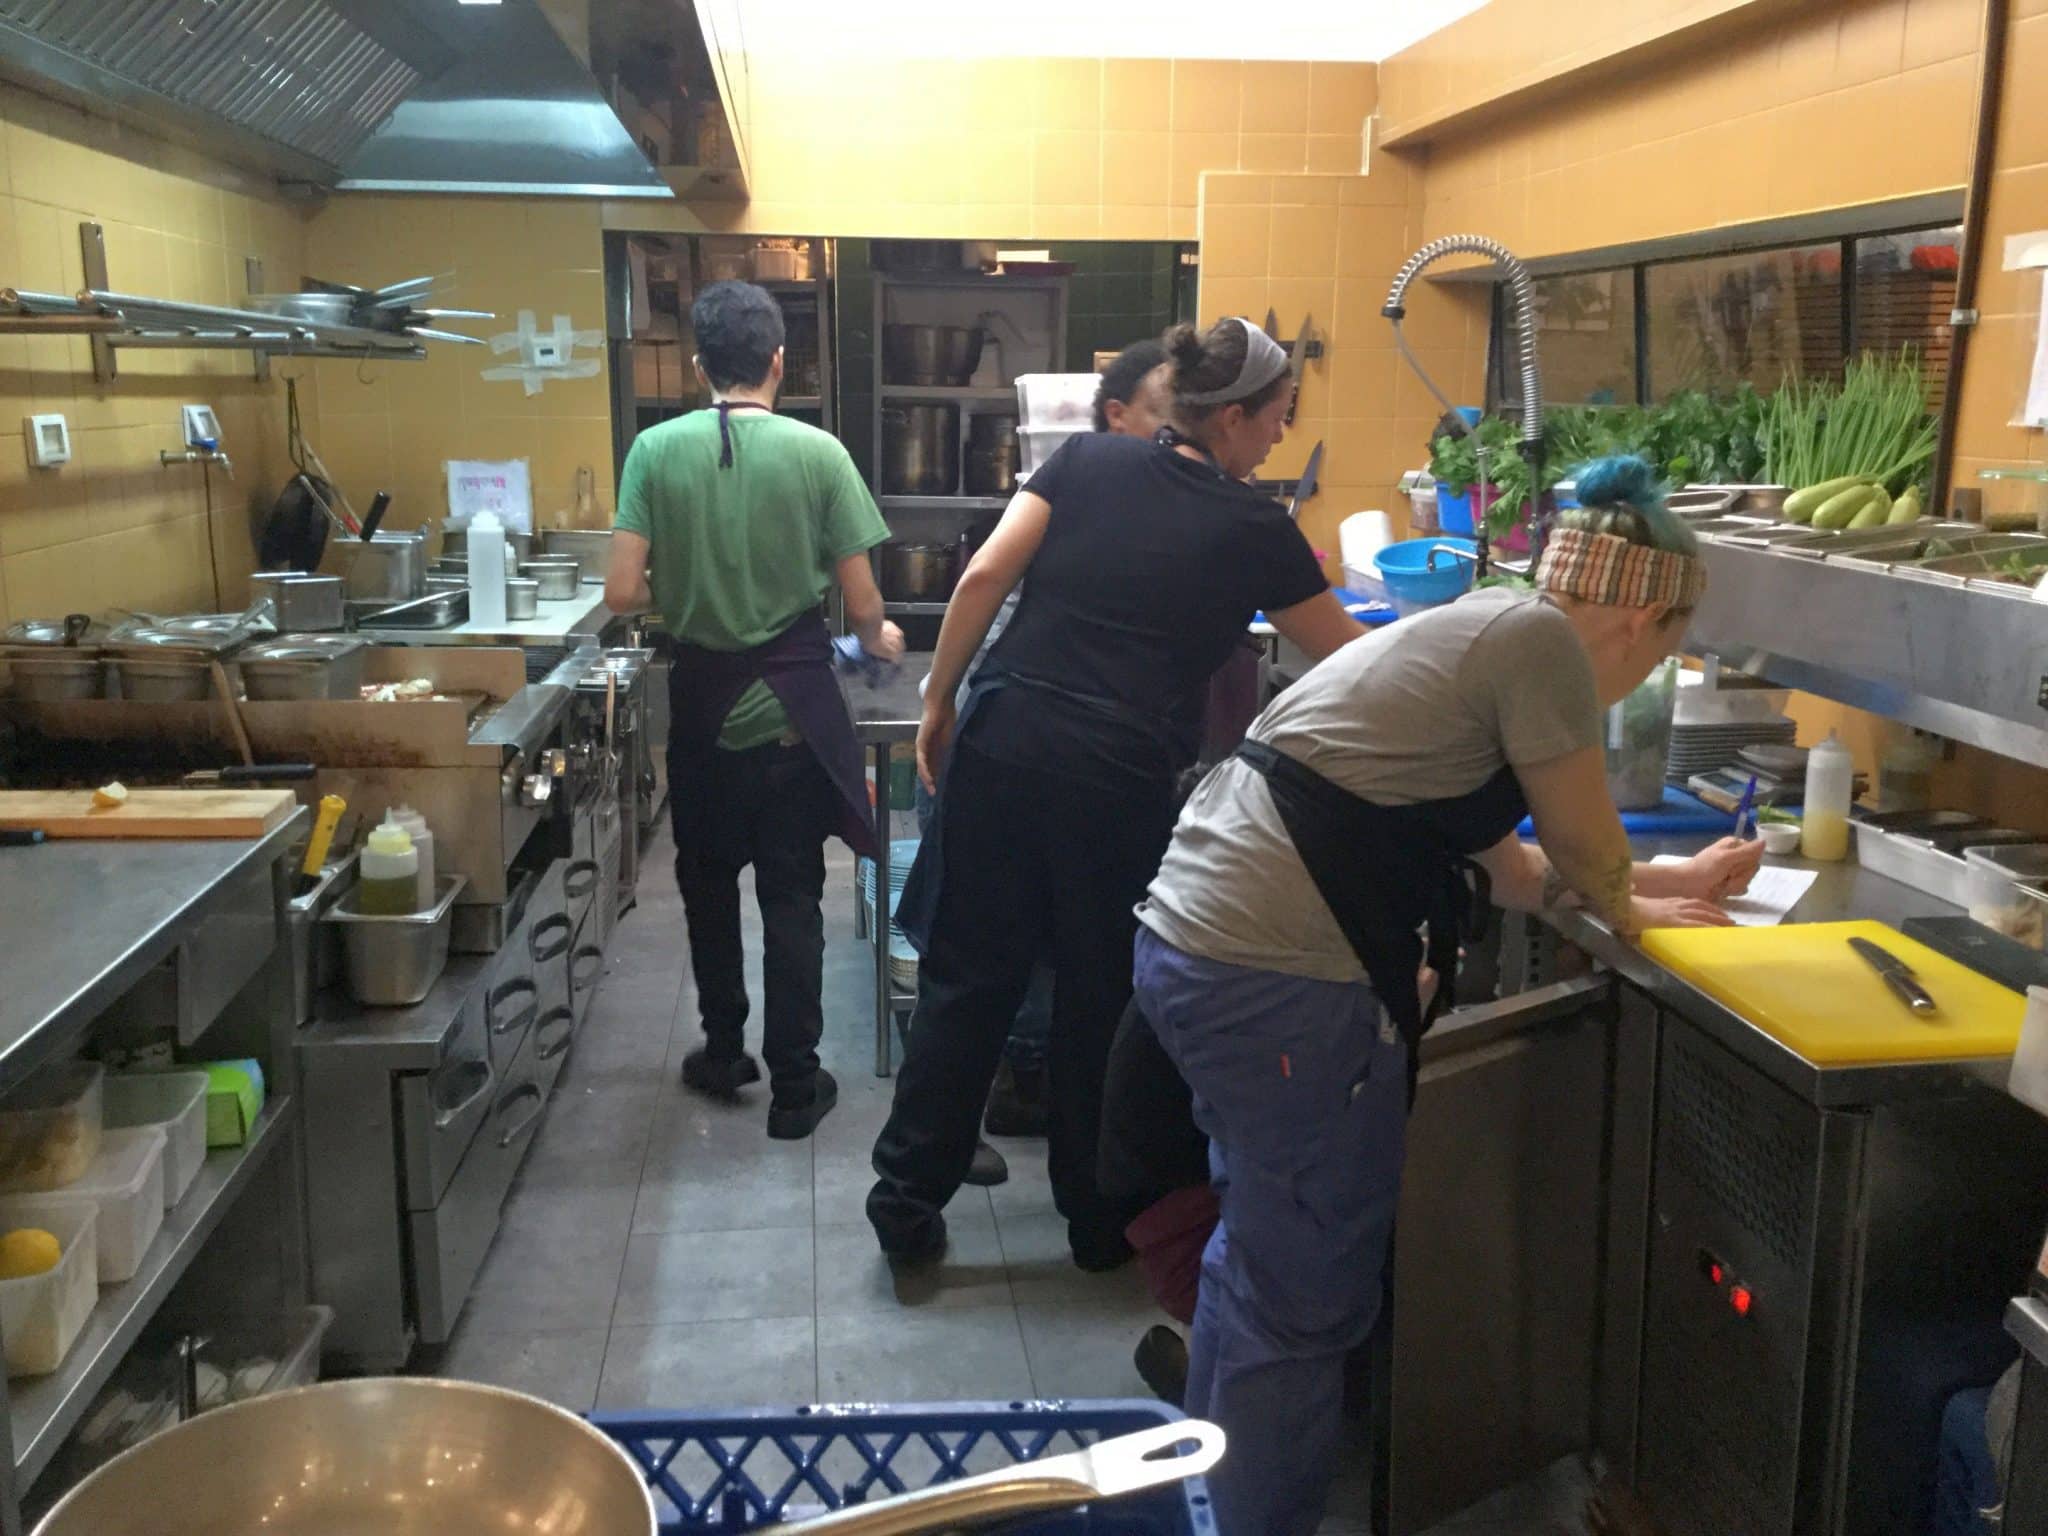 איגרא רמא - מסעדה לא גדולה עם חצר ומטבח שקוף שנפתחה לפני חודשים ספורים. צילום אביטל ענבר